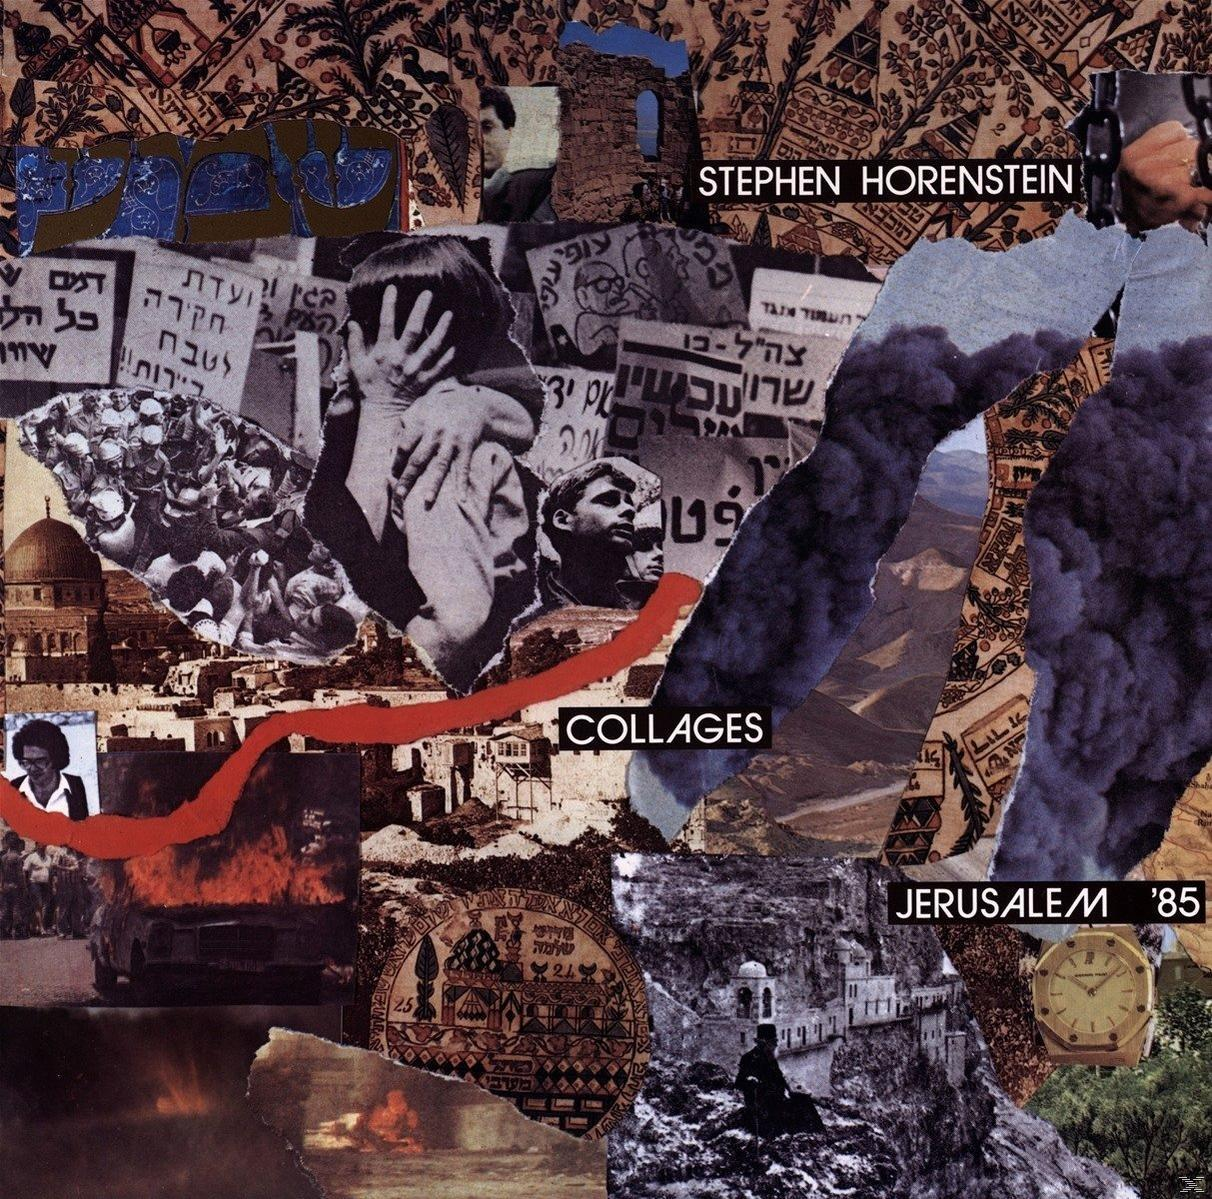 Stephen - Collages-Jerusalem \'85 (Vinyl) Horenstein -